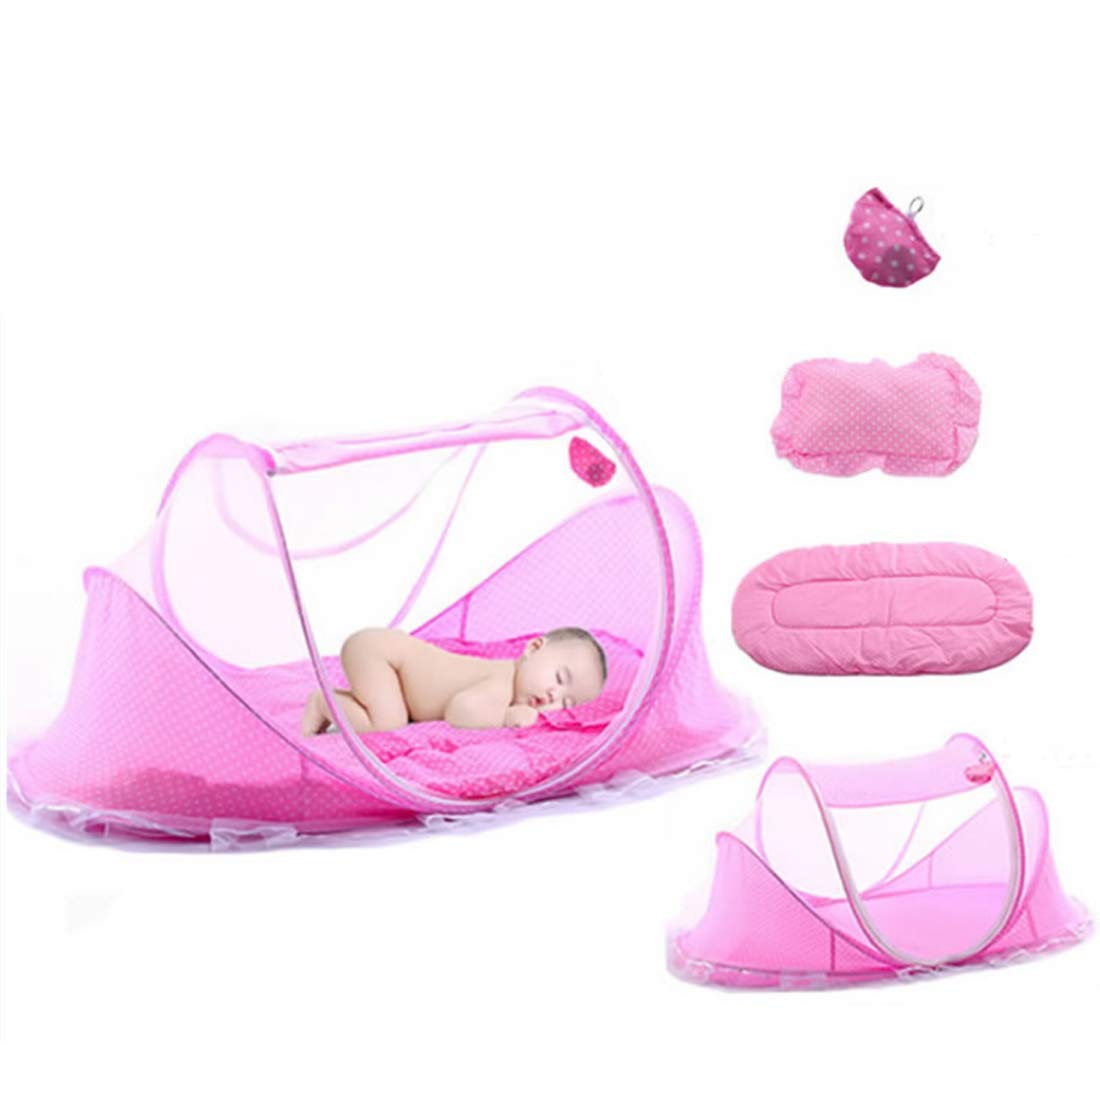 Fanville Ultraleichtes Baby-Strandzelt Tragbares Pop-up-Kinderbett Matratze Reisebett Kinder Baby Moskitonetz für Bett Tragbares faltbares Neugeborenes Reisezelt